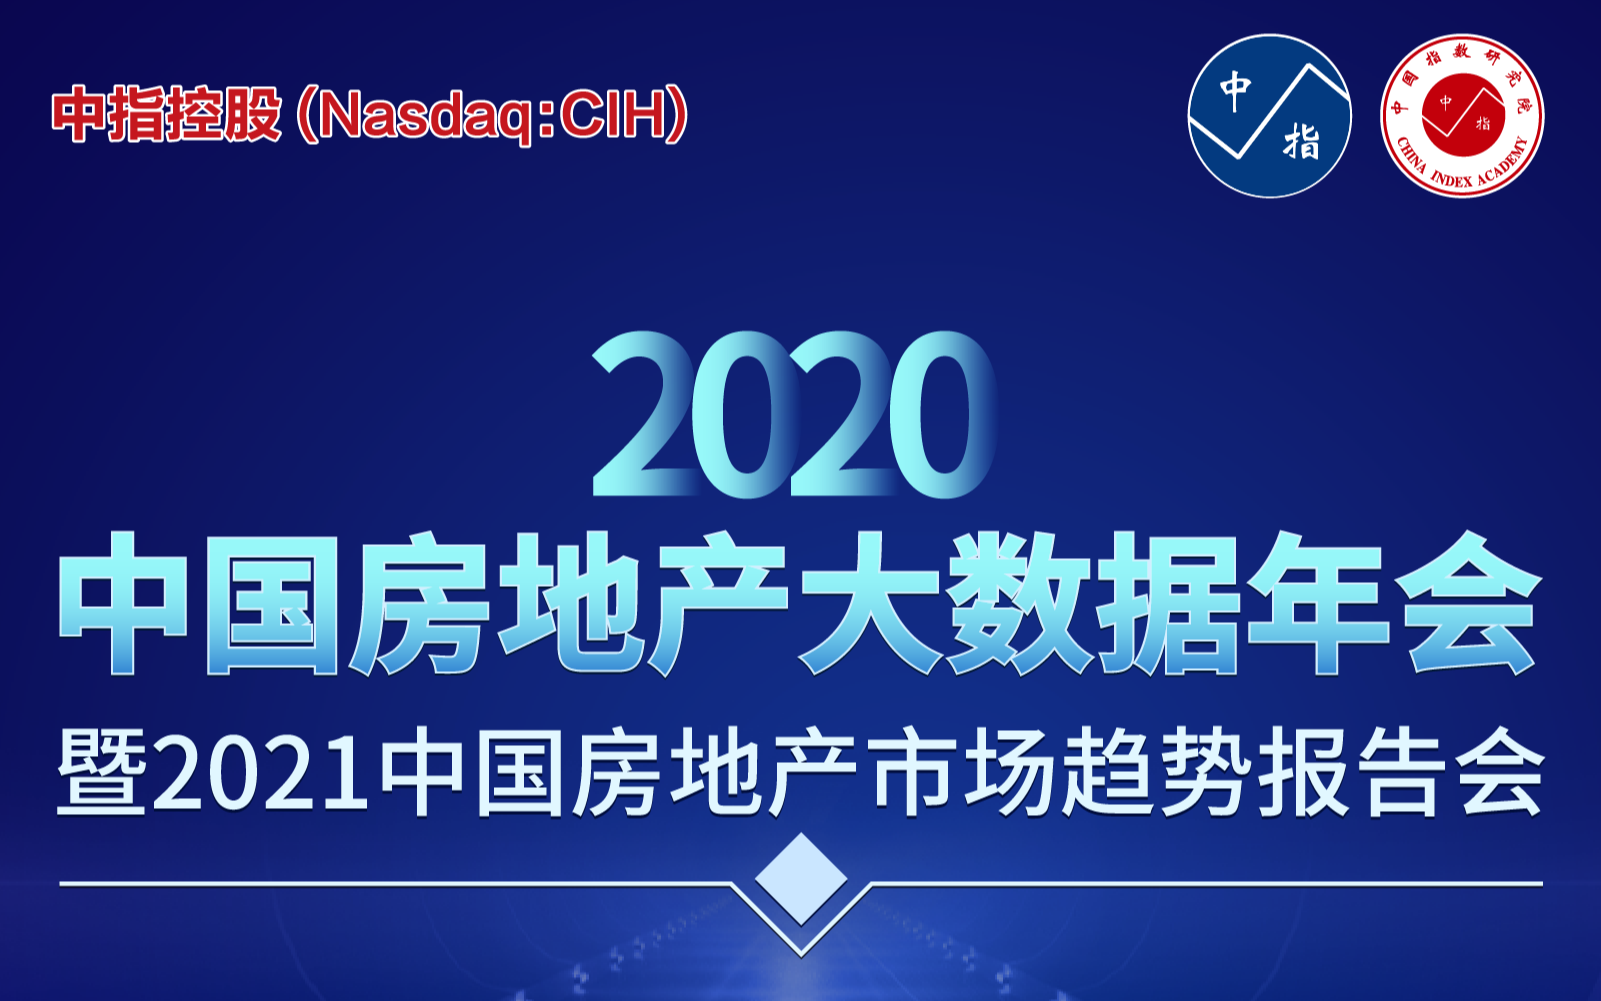 2020中国房地产大数据年会 暨2021中国房地产市场趋势报告会